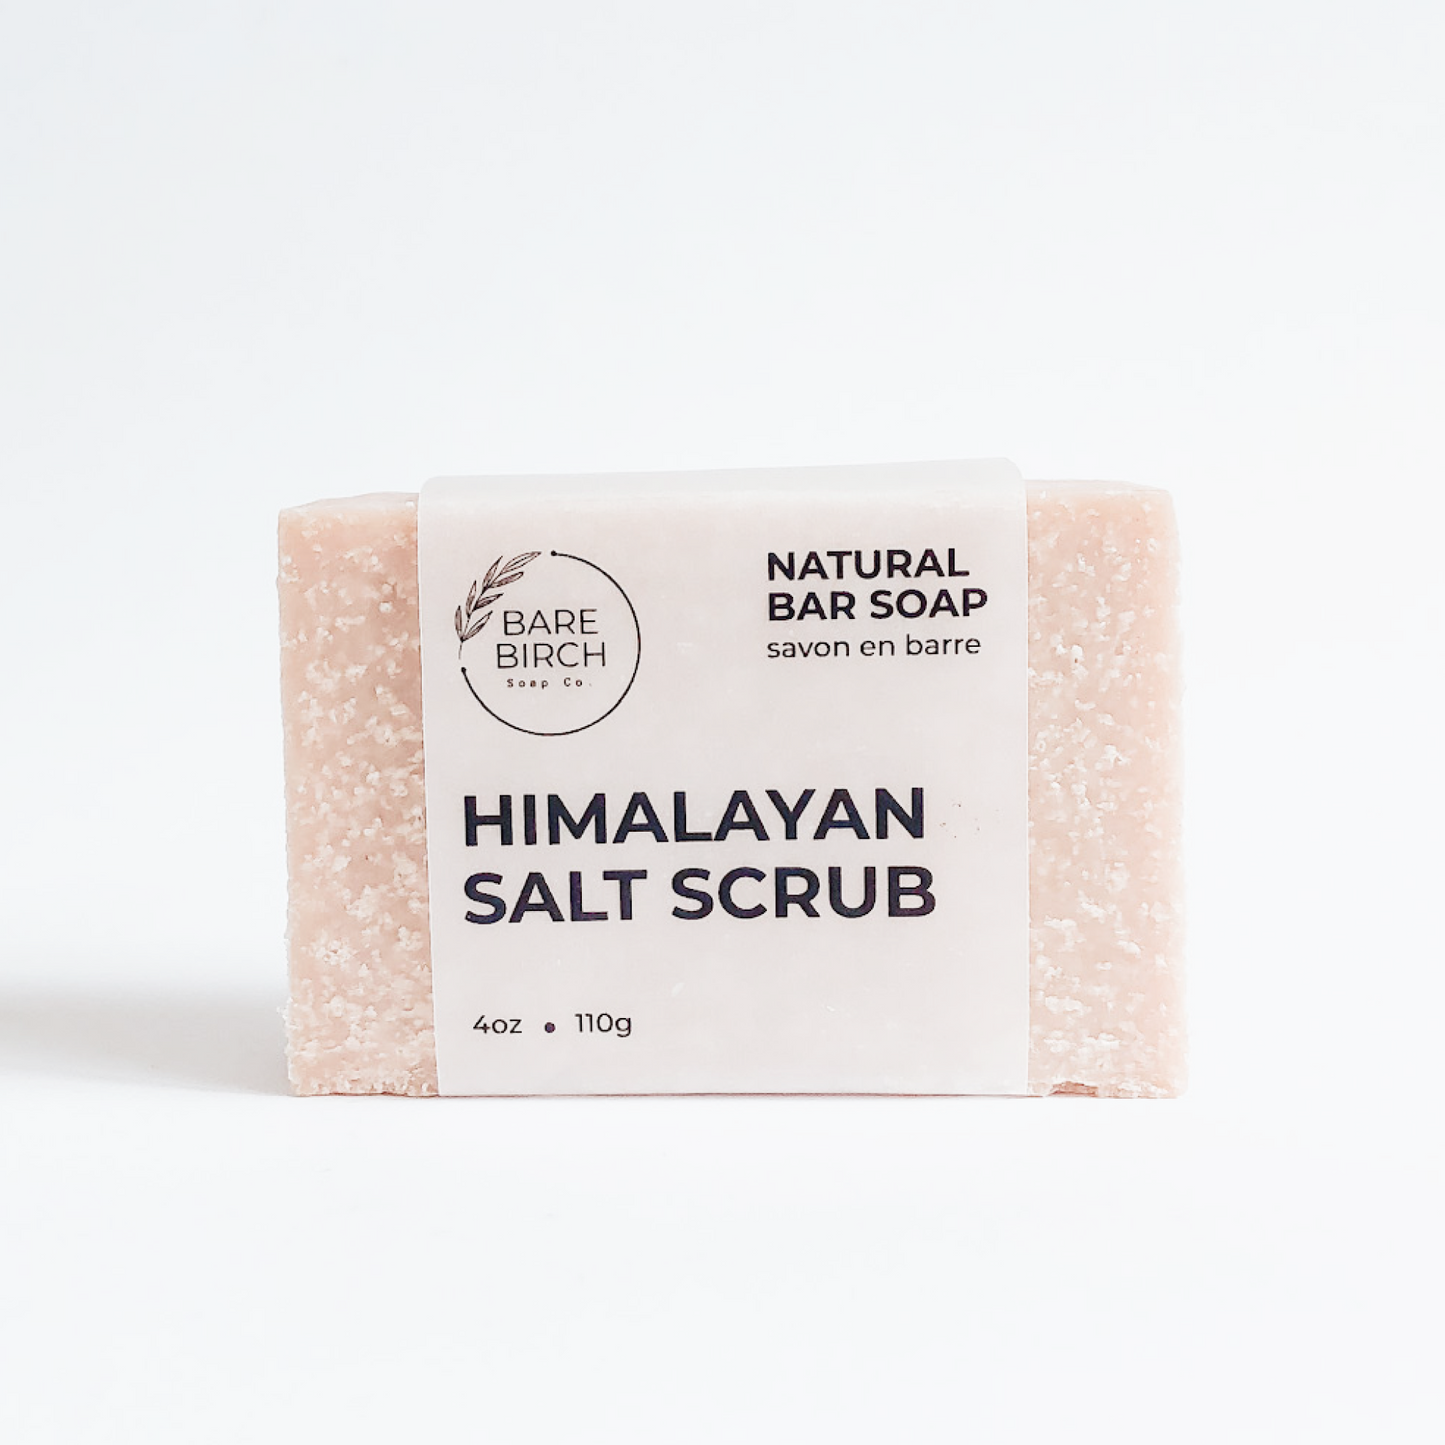 Natural Himalayan Salt Scrub Soap